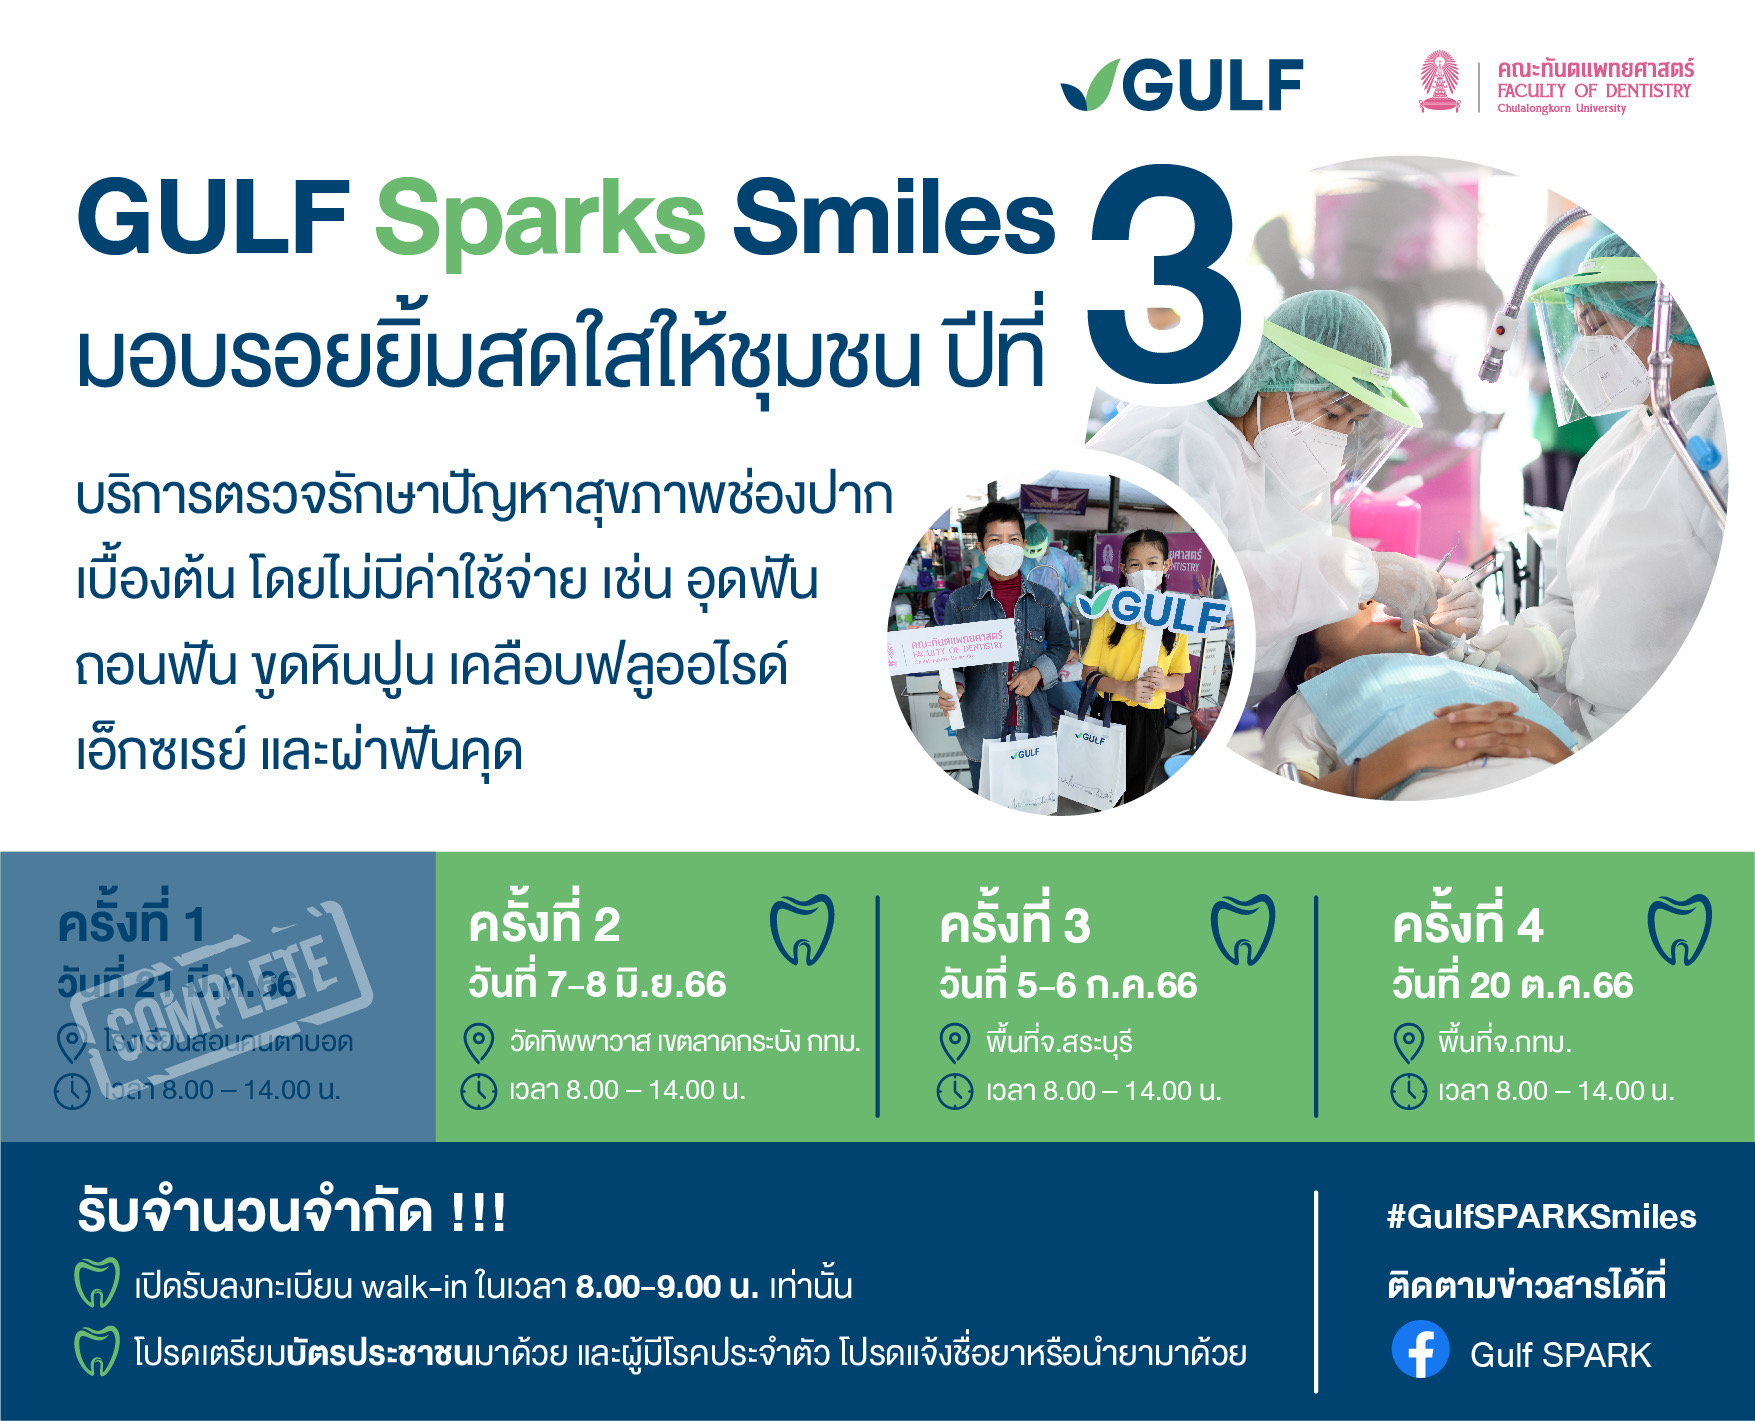 GULF Sparks Smiles มอบรอยยิ้มสดใสให้ชุมชน ปี 3 หน่วยที่ 2  พร้อมลงพื้นที่ชุมชนทิพพาวาส เขตลาดกระบัง 7-8 มิ.ย.นี้